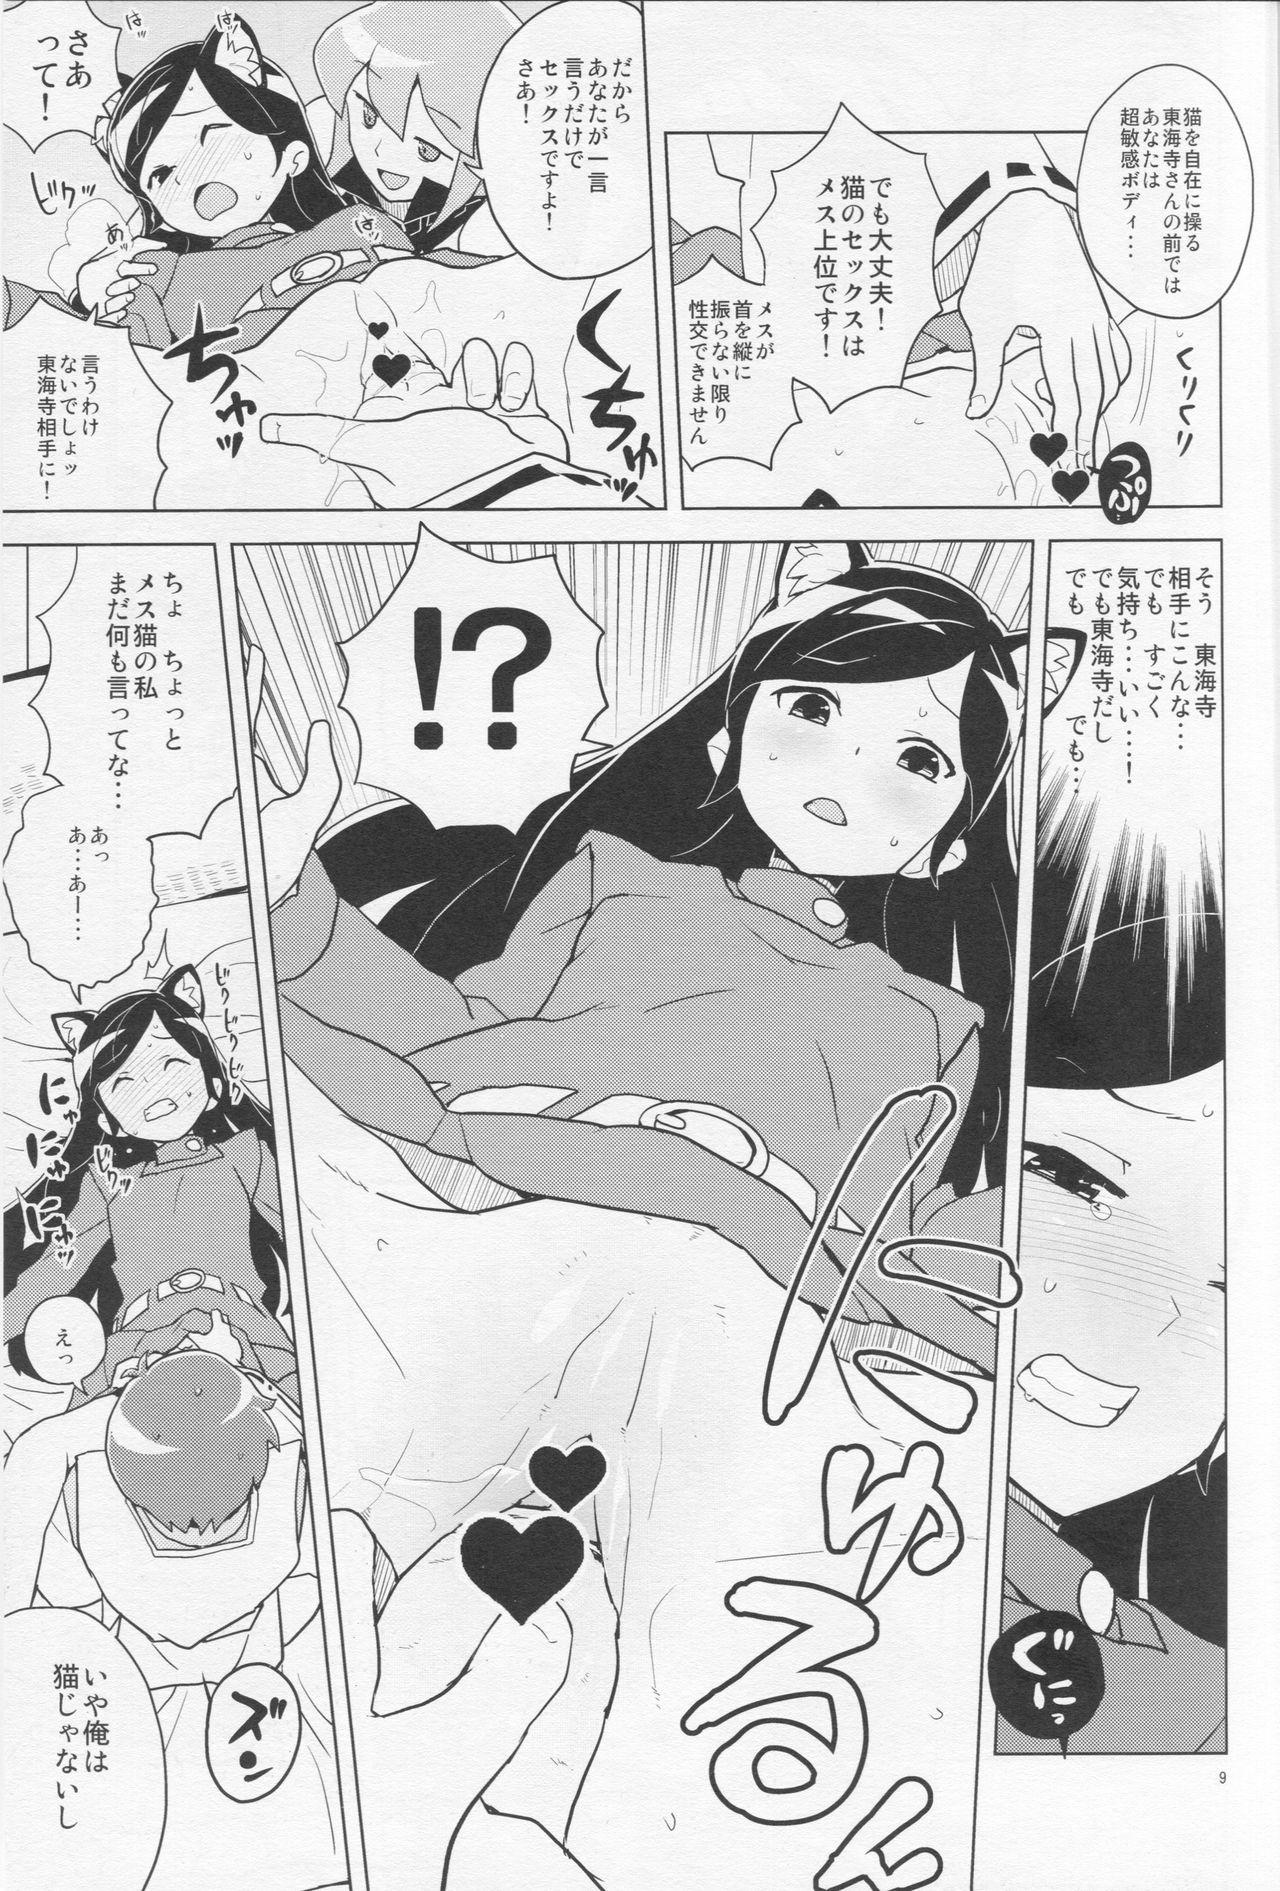 Roundass HAPPY☆NOW!! - Kuromajo san ga tooru Doggy Style Porn - Page 9